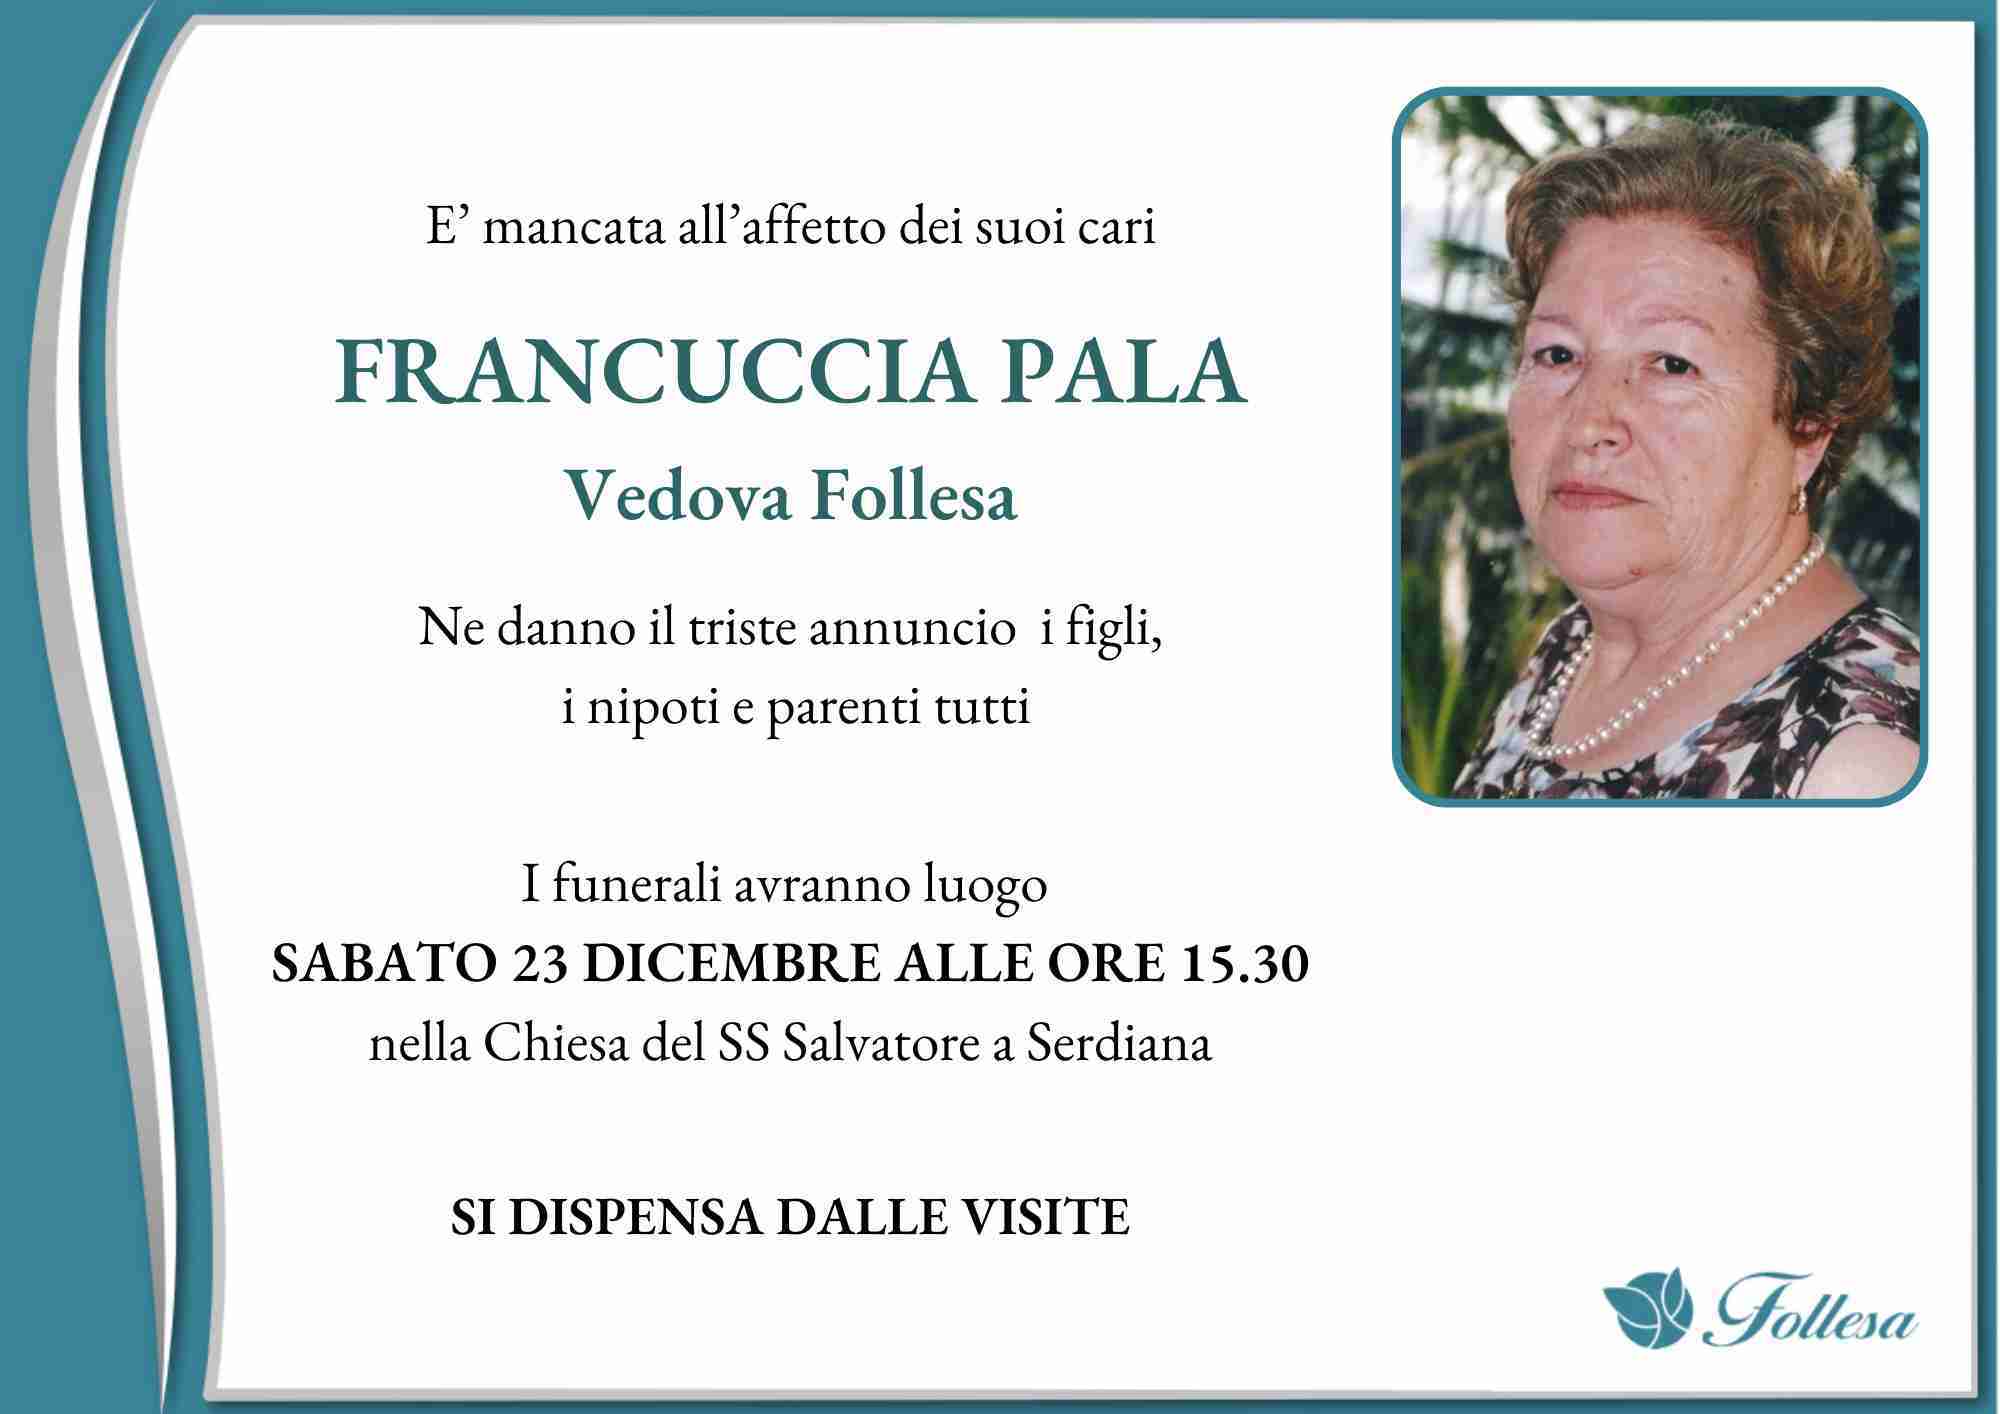 Francuccia Pala